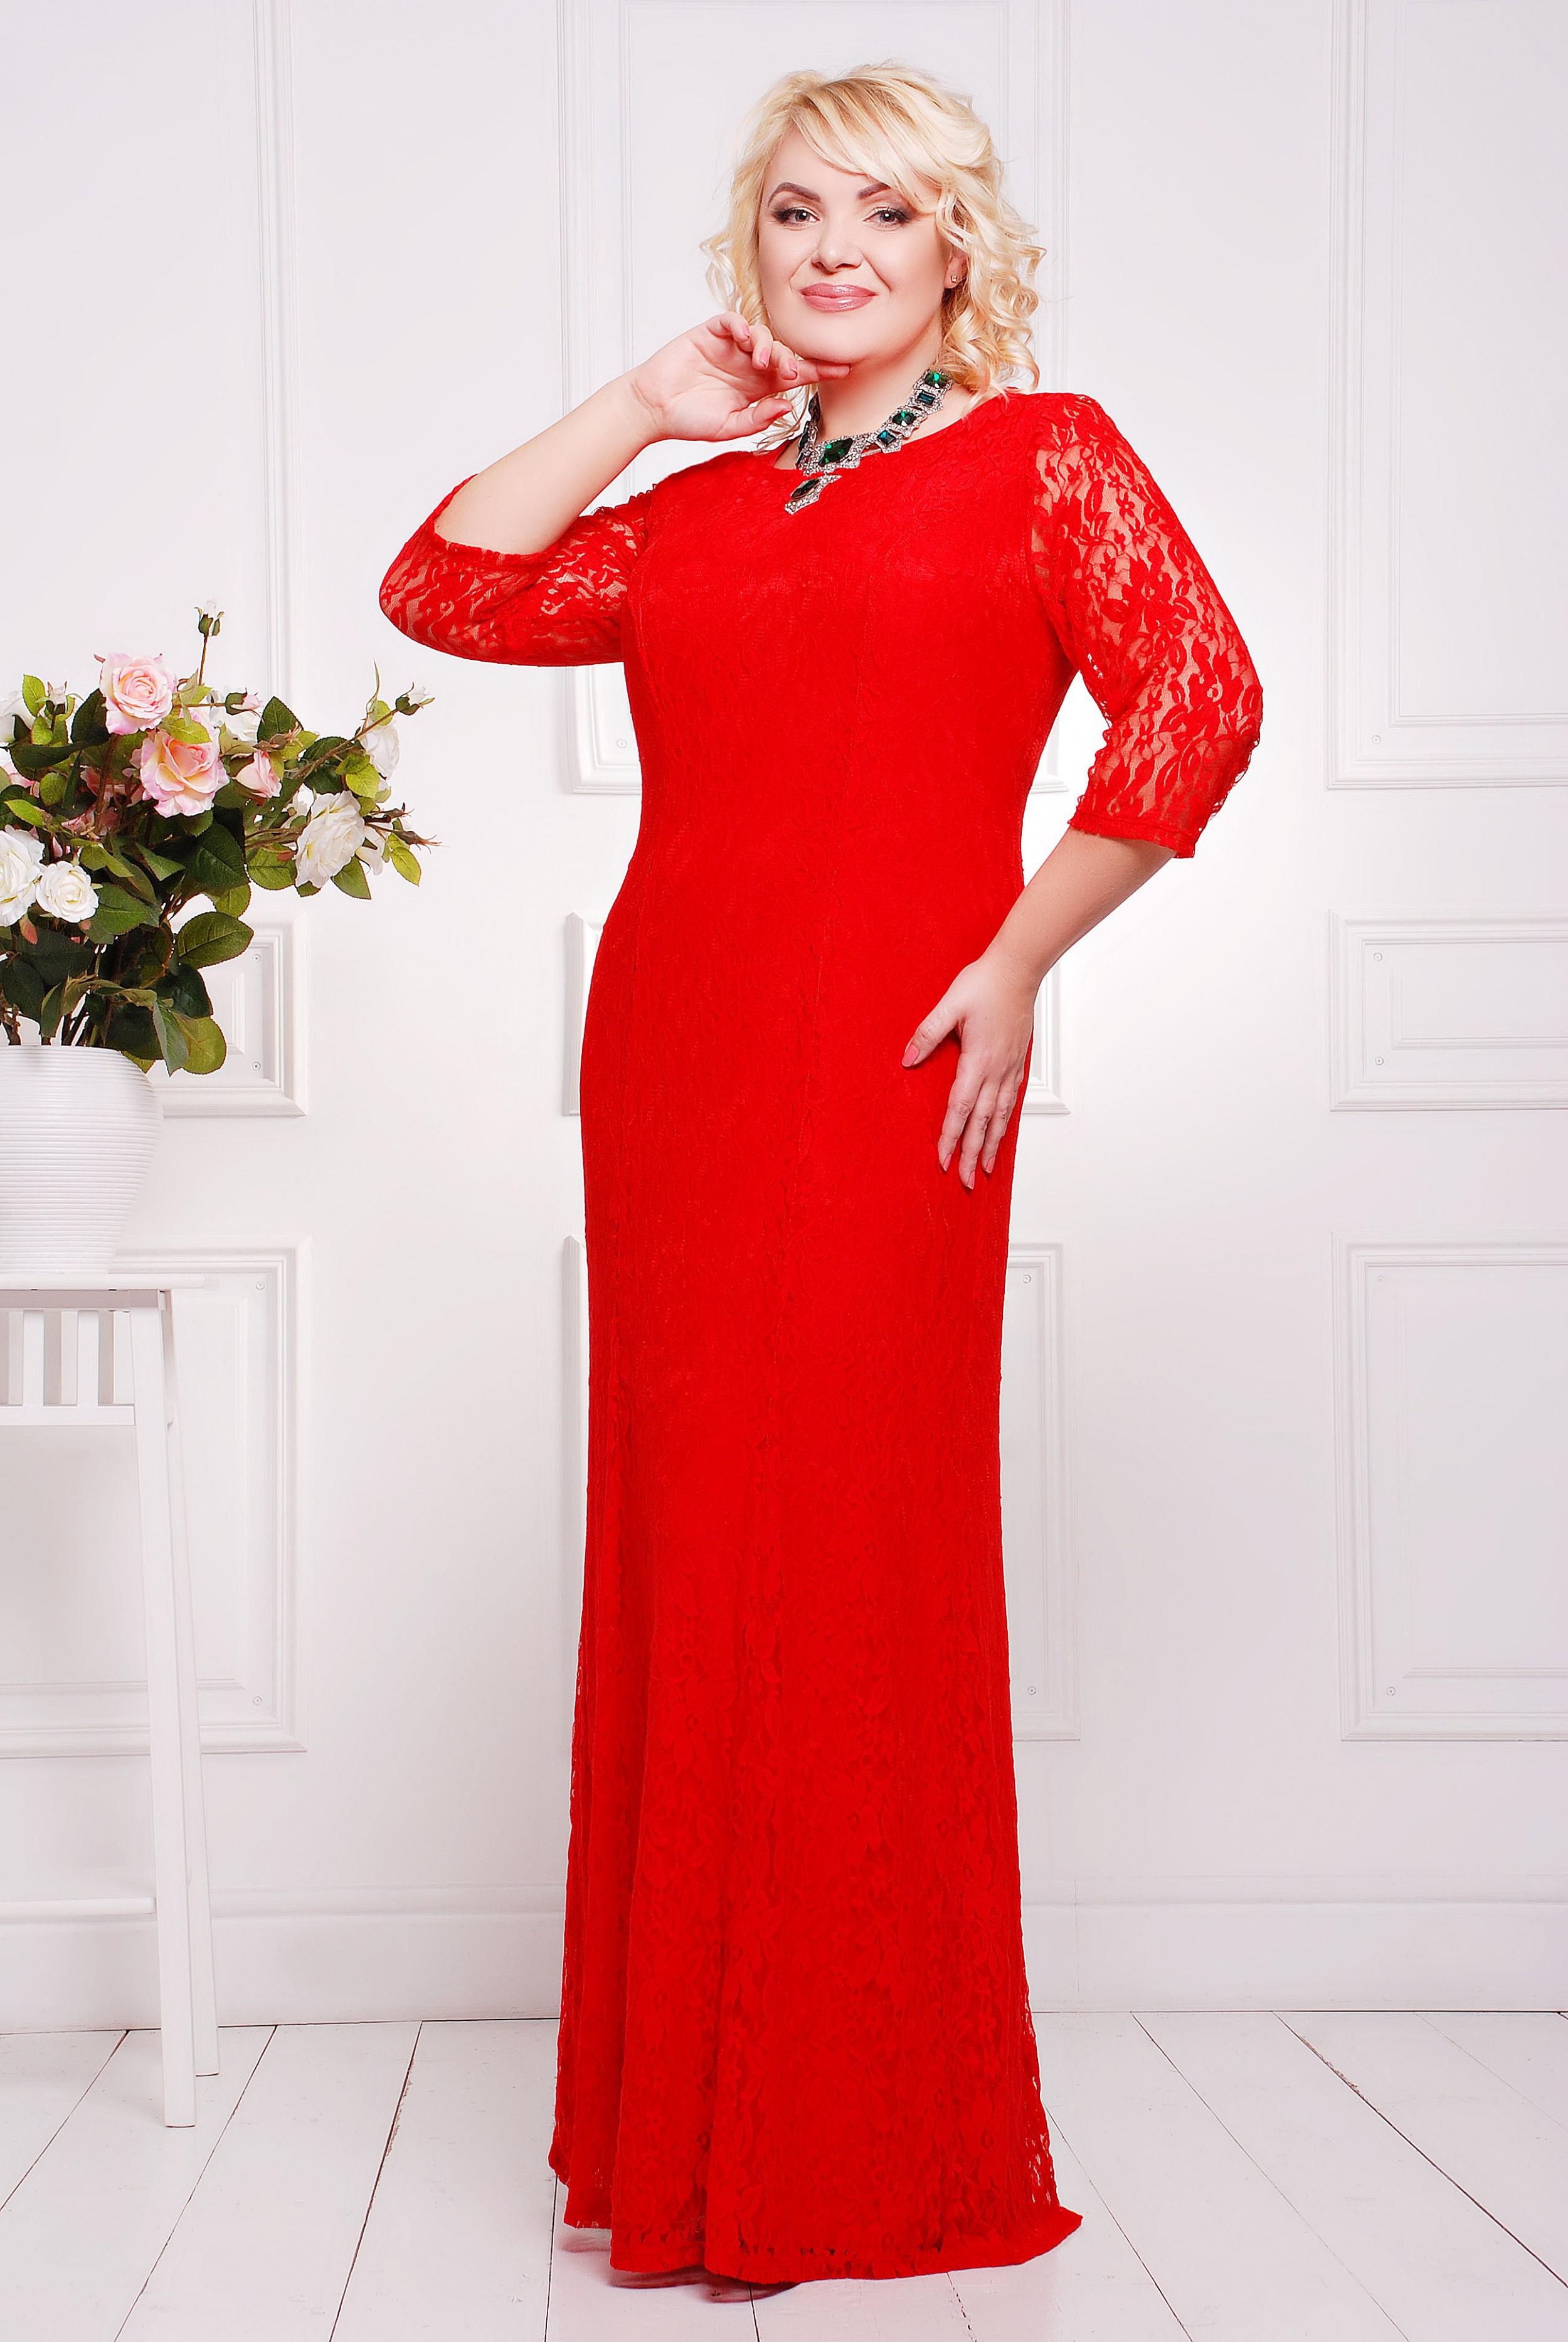 Интернет магазин нарядных платьев больших размеров. Красное платье гипюровое 52-54. Платье вечернее гипюровое длинное 56 размера. Нарядные платьбольших размеров. Платья женские вечерние больших размеров.